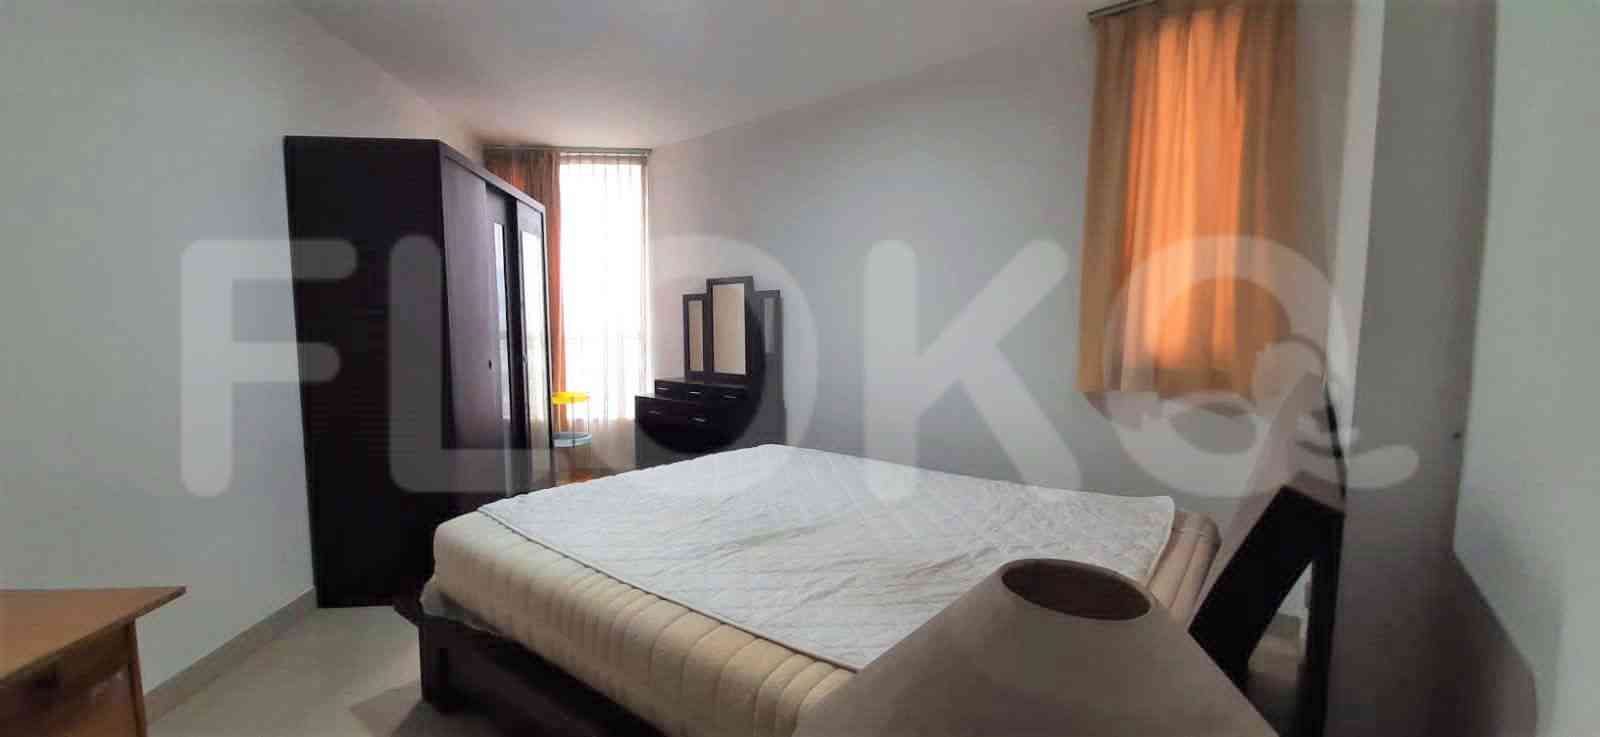 1 Bedroom on 16th Floor for Rent in Taman Rasuna Apartment - fku51d 3